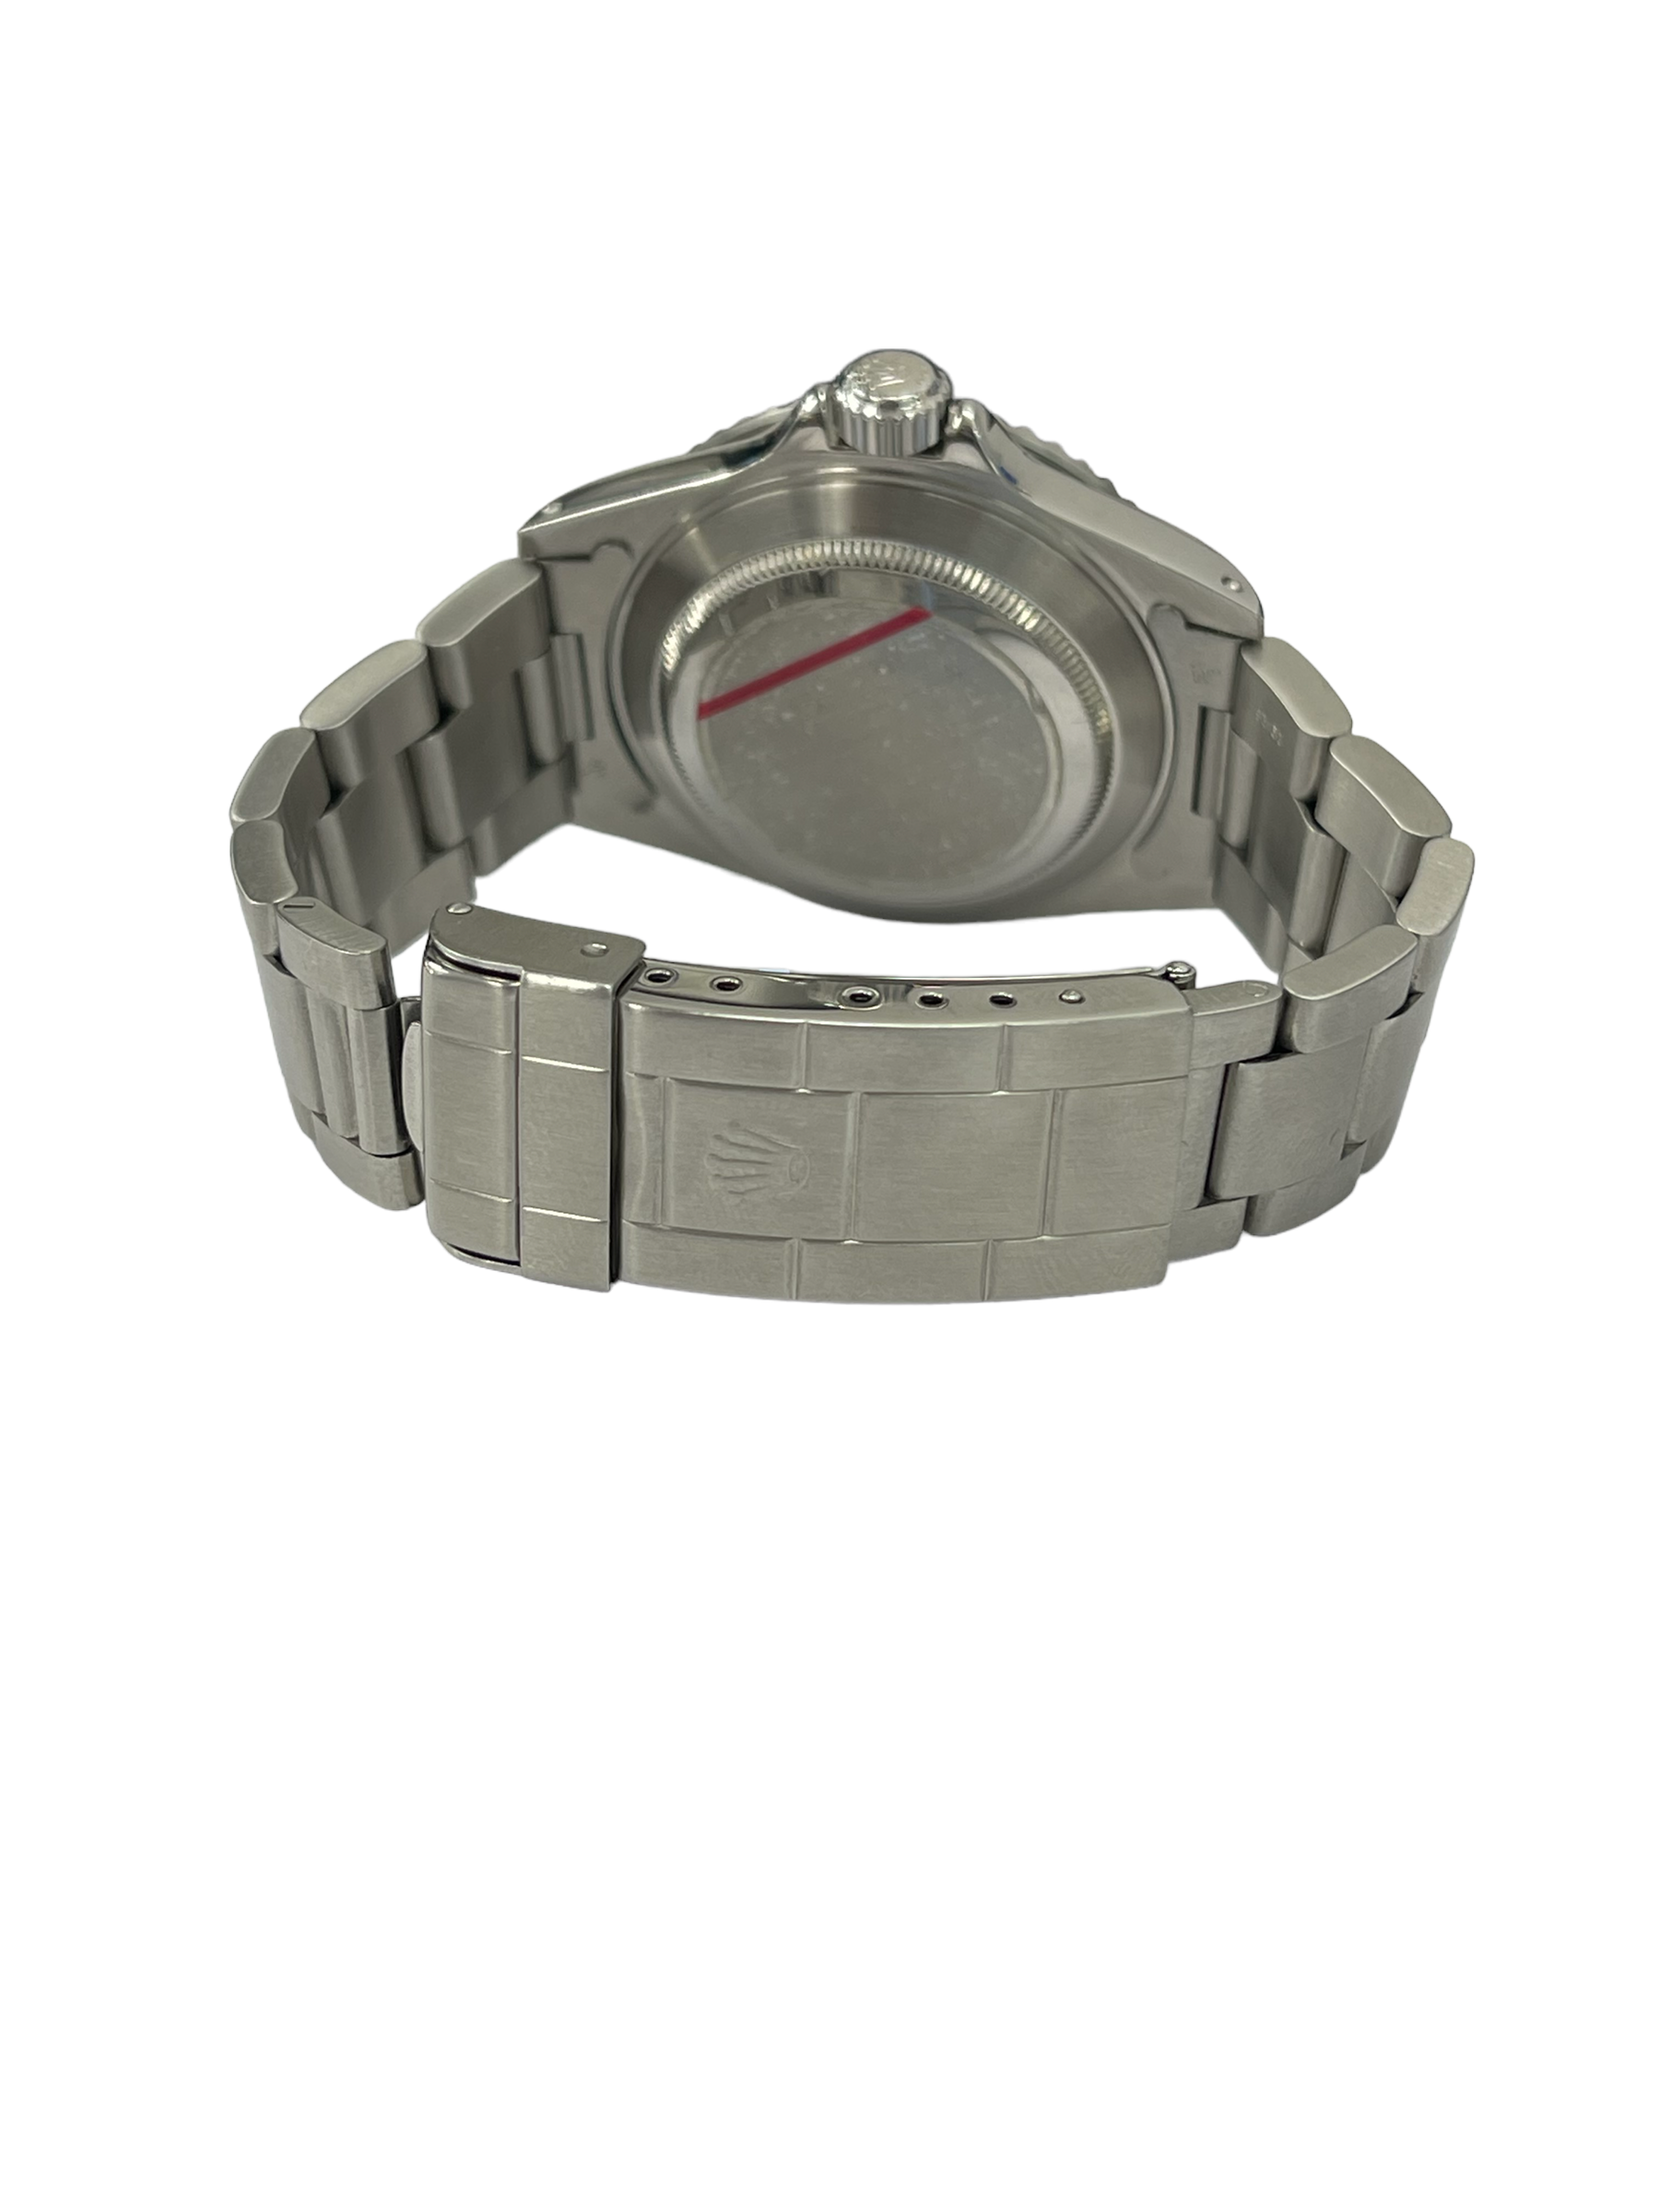 Rolex Black Submariner No Date Stainless Steel Watch Ref 14060